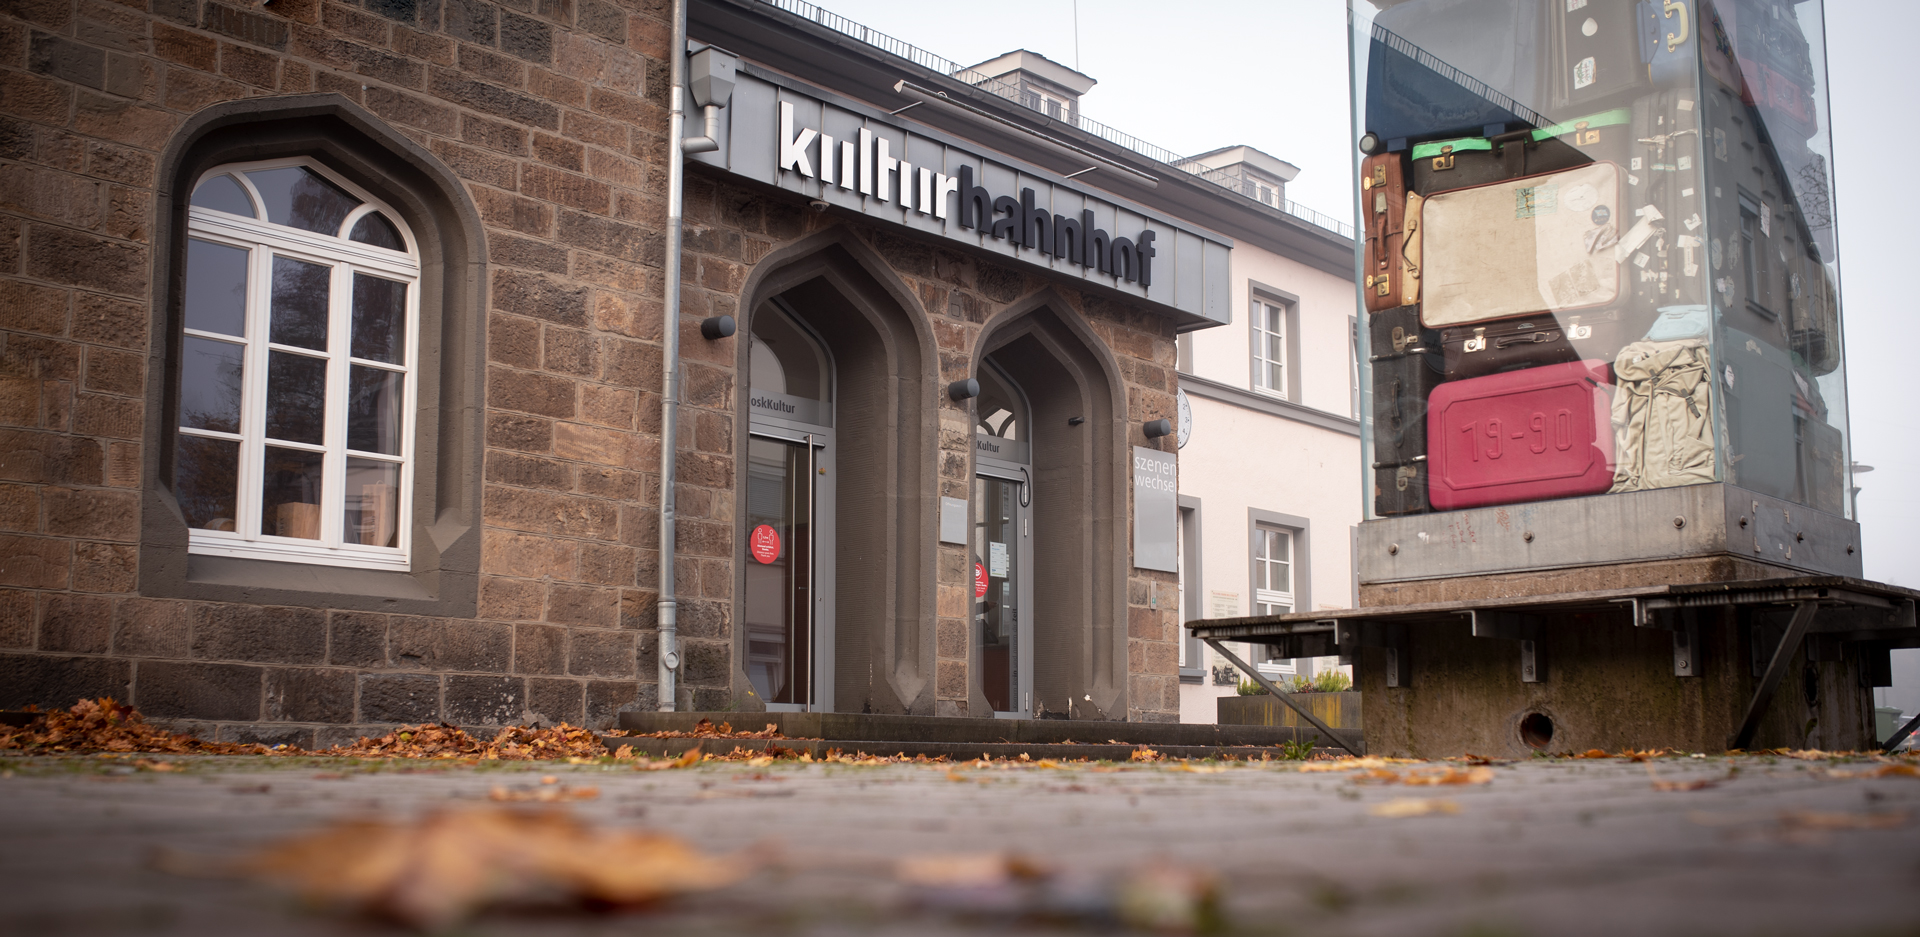 Gebäudeaufnahme des Kreuztaler Kulturbahnhof mit großer Logo-Beschriftung und Koffer-Kunstwerk im Vordergrund in herbstlicher Stimmung.